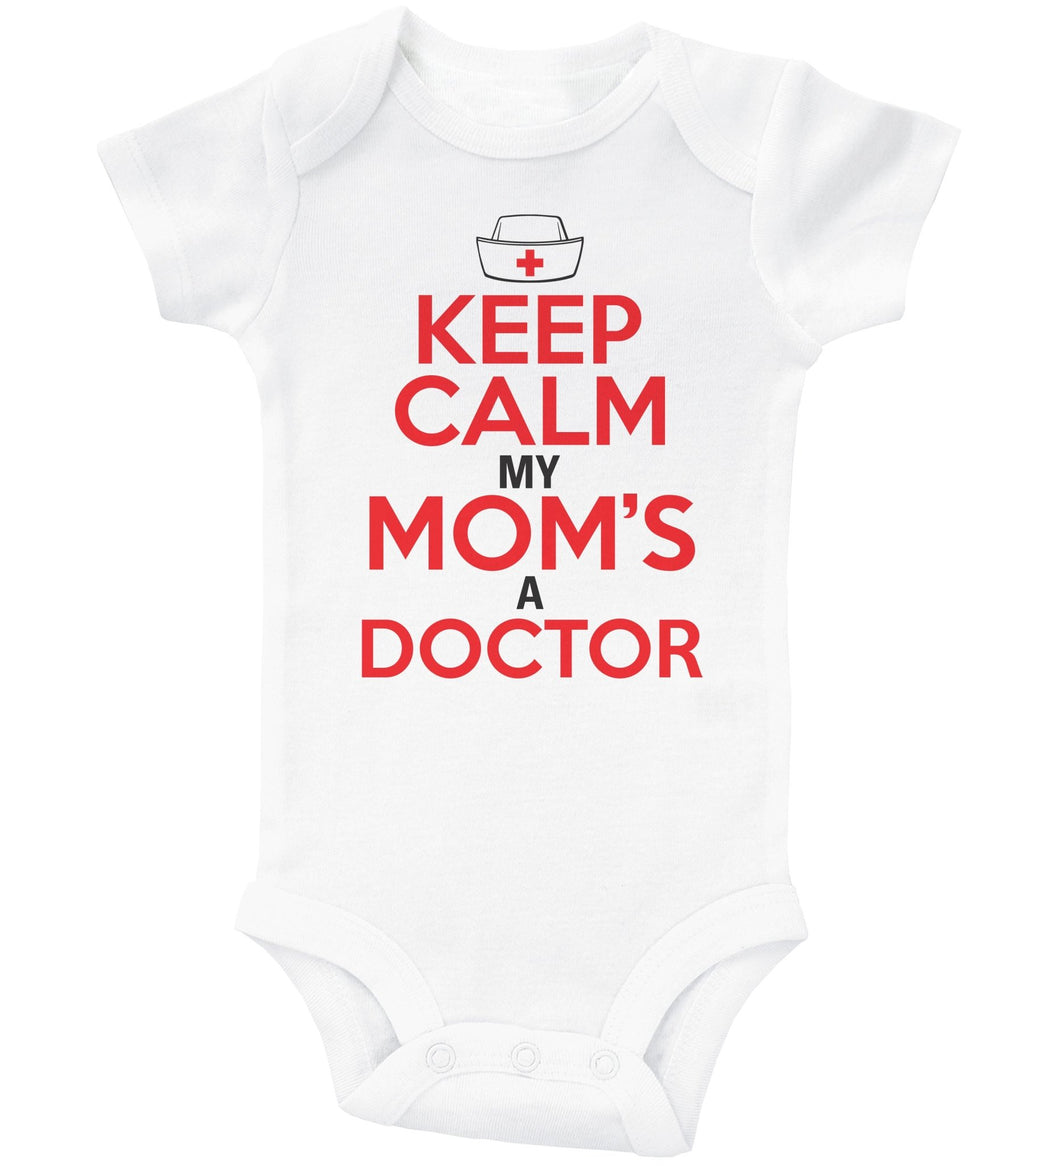 KEEP CALM MY MOM'S A DOCTOR / Keep Calm My Mom's A Doctor Baby Onesie - Baffle